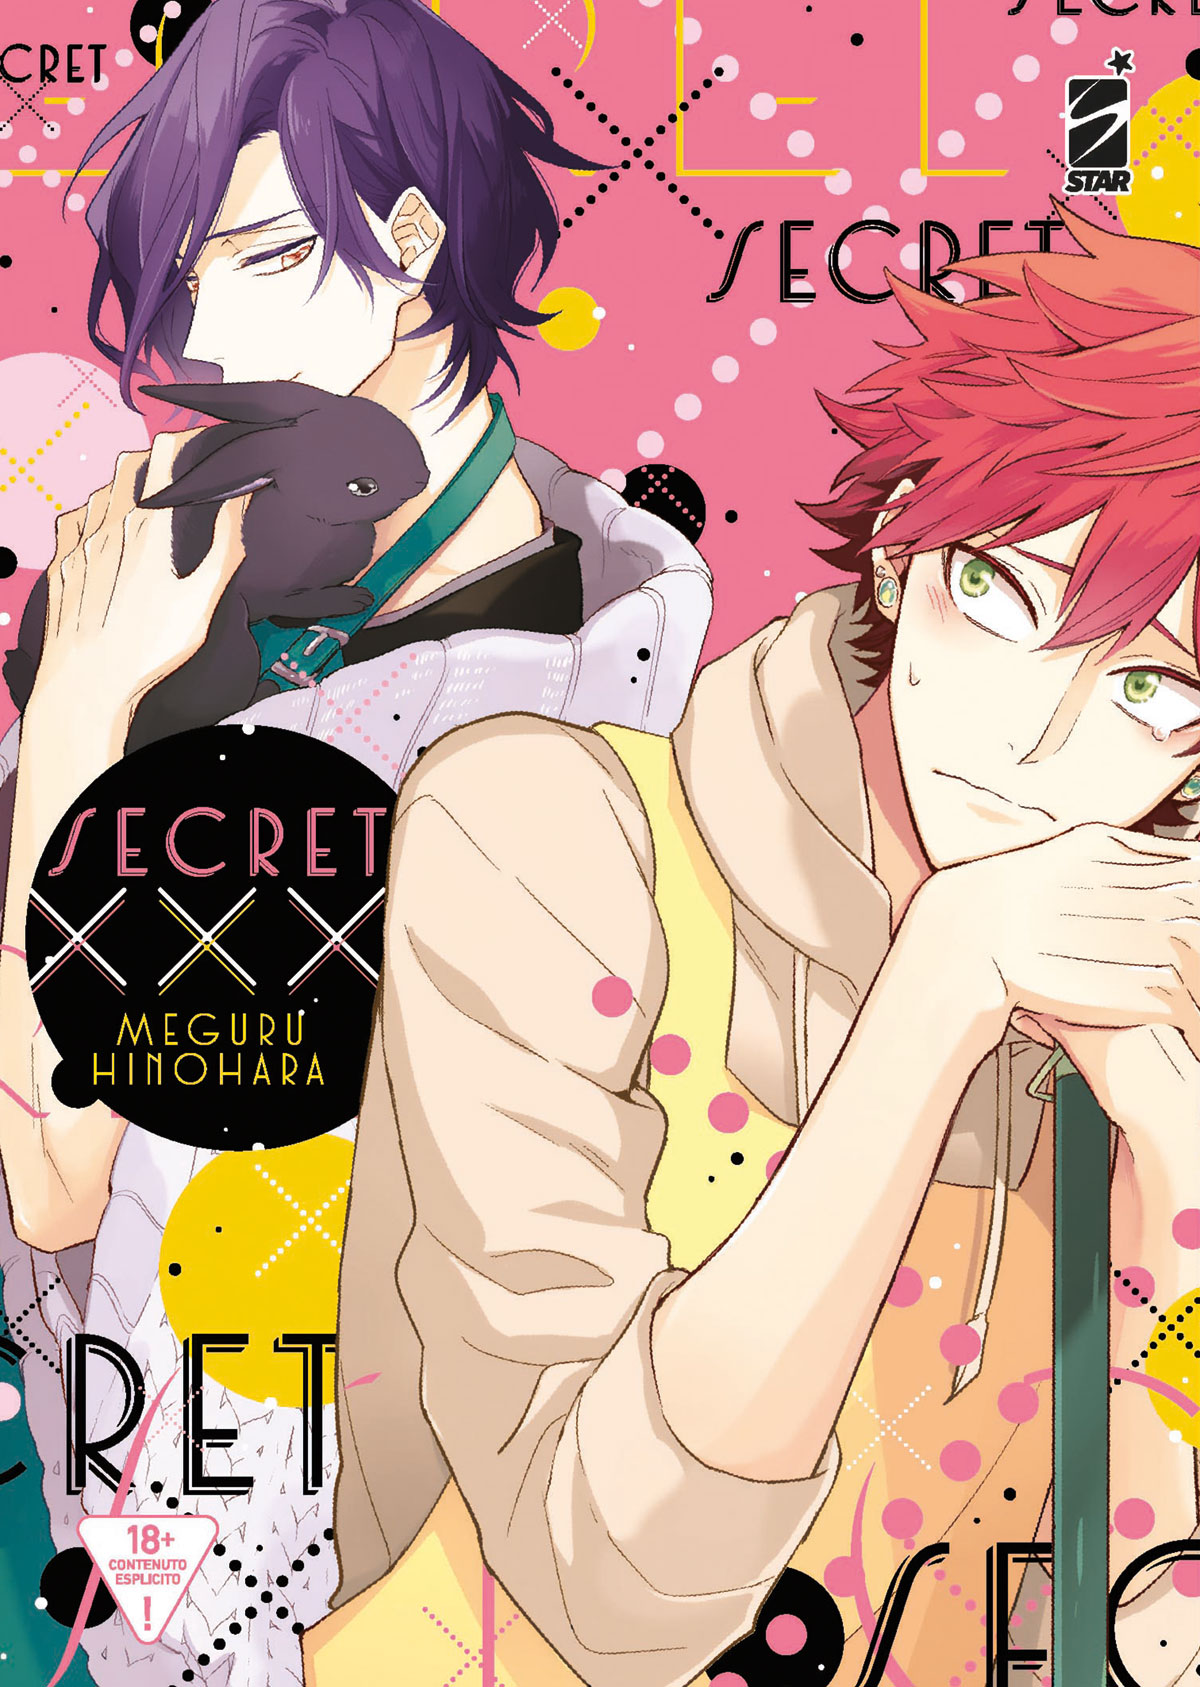 i due protagonisti nella copertina di secret xxx, manga distribuito da star - nerdface